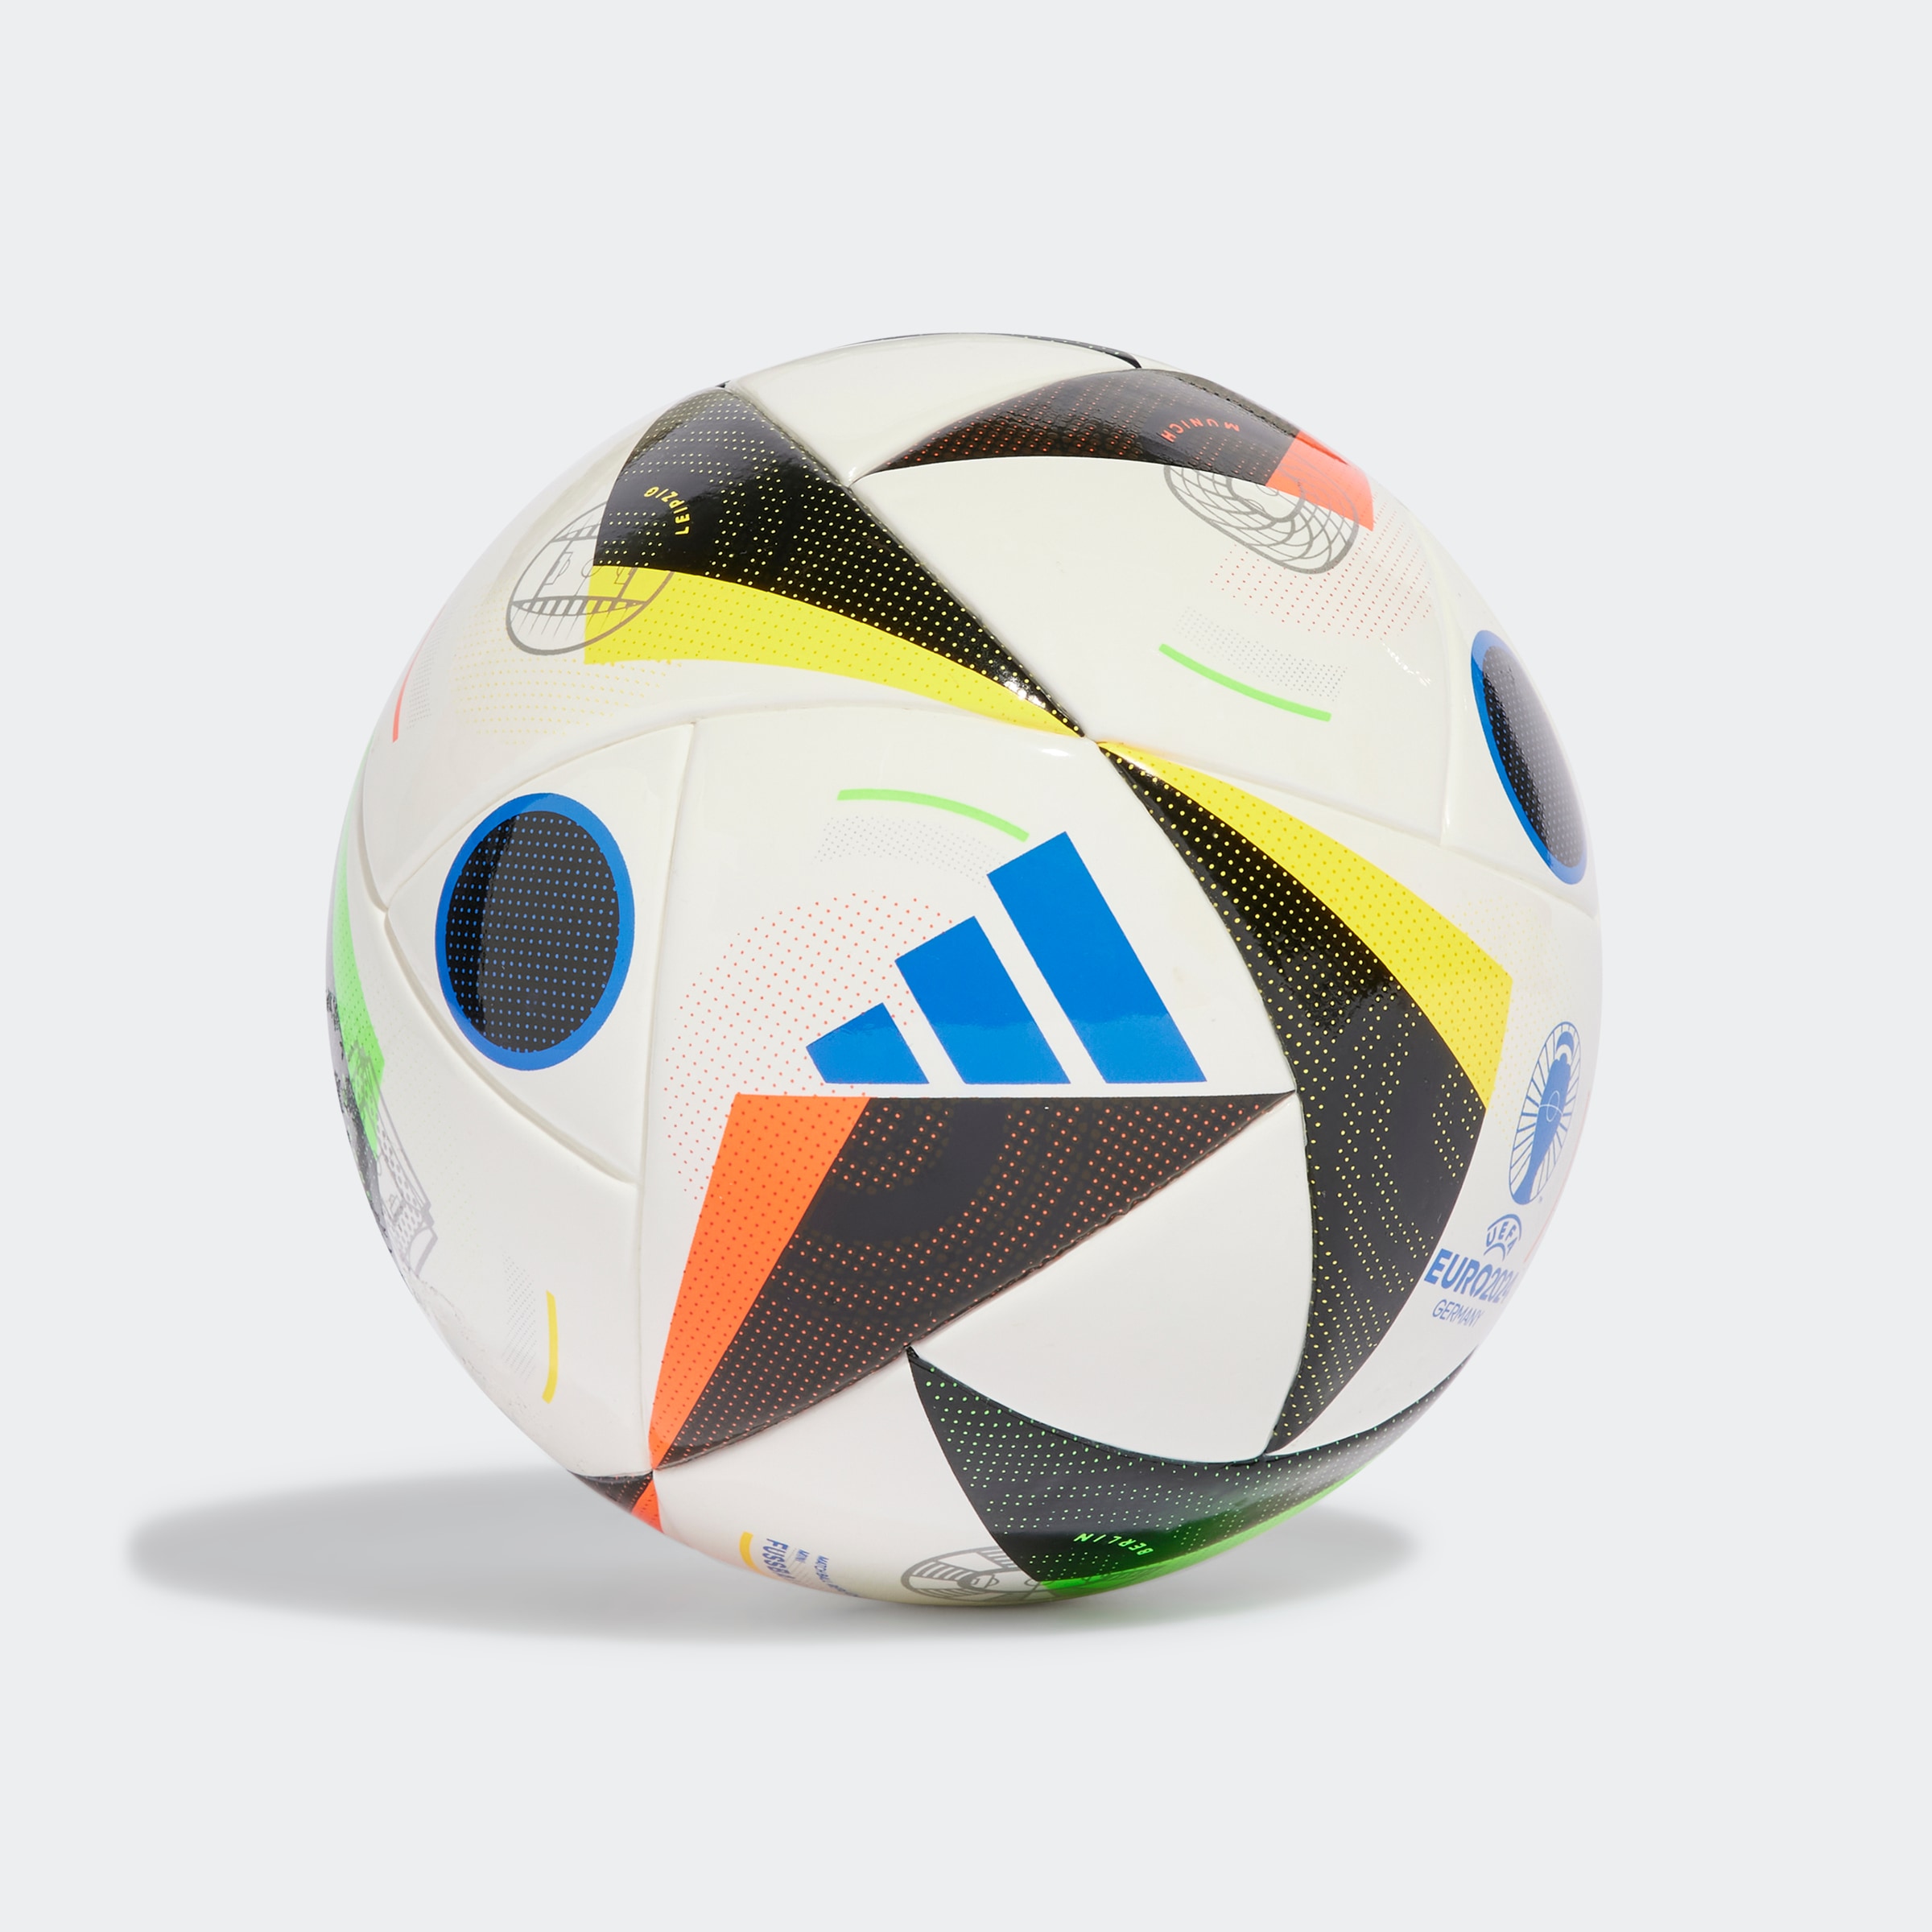 adidas Performance Fußball »EURO24 MINI«, (1), Europameisterschaft 2024